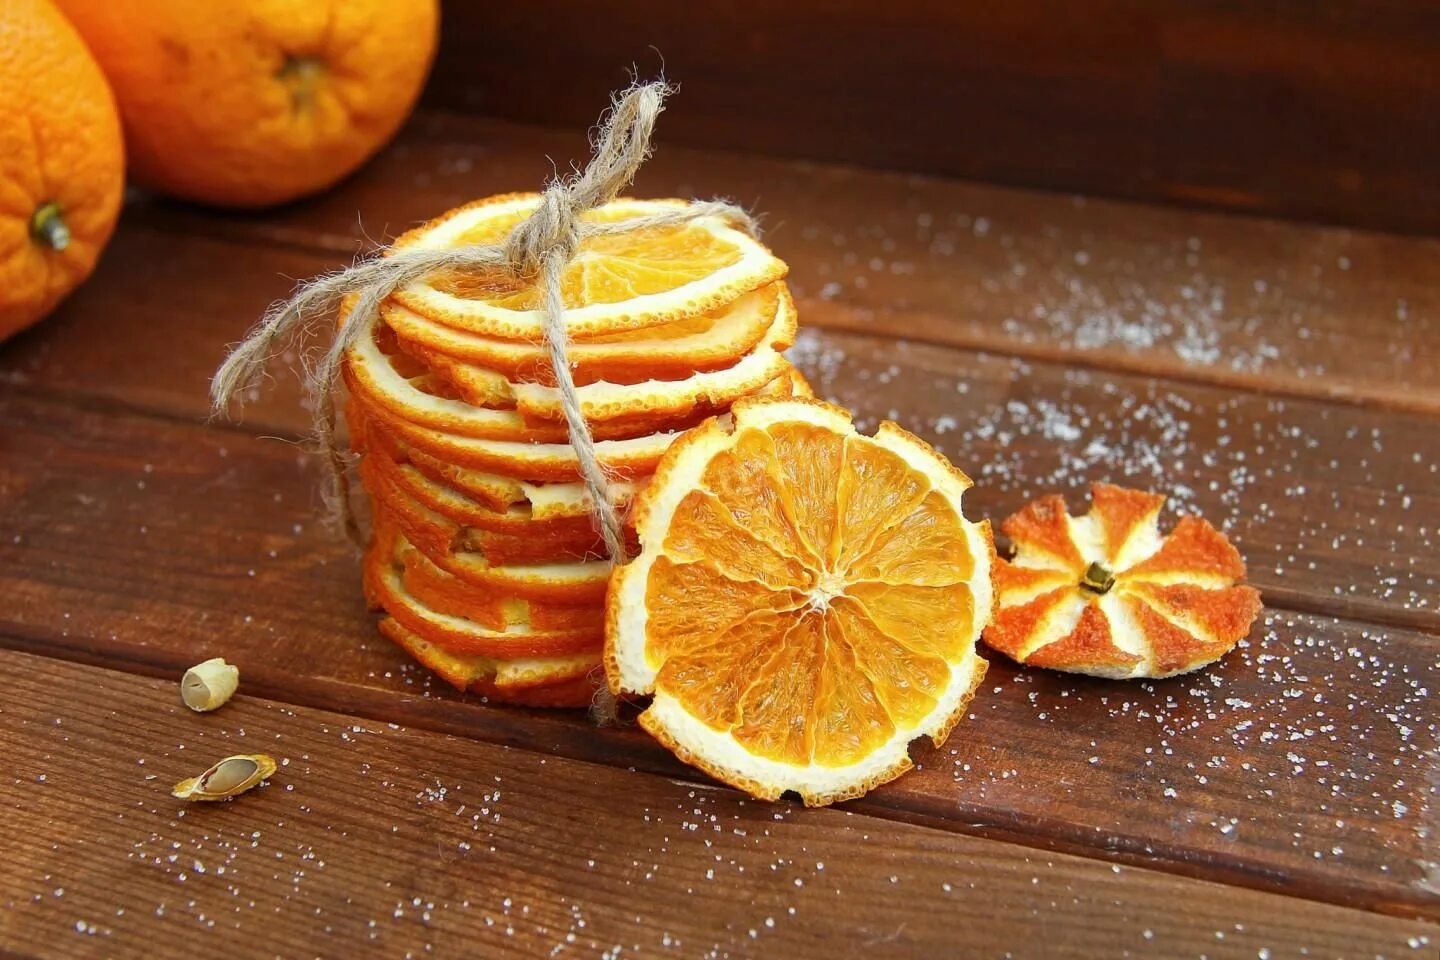 Кожура в сахаре. Цукаты апельсиновые (из апельсиновых корок). Цукаты из апельсиновых корок. Цедра апельсина (апельсиновые дольки),100г. Цукаты апельсина сушеные.